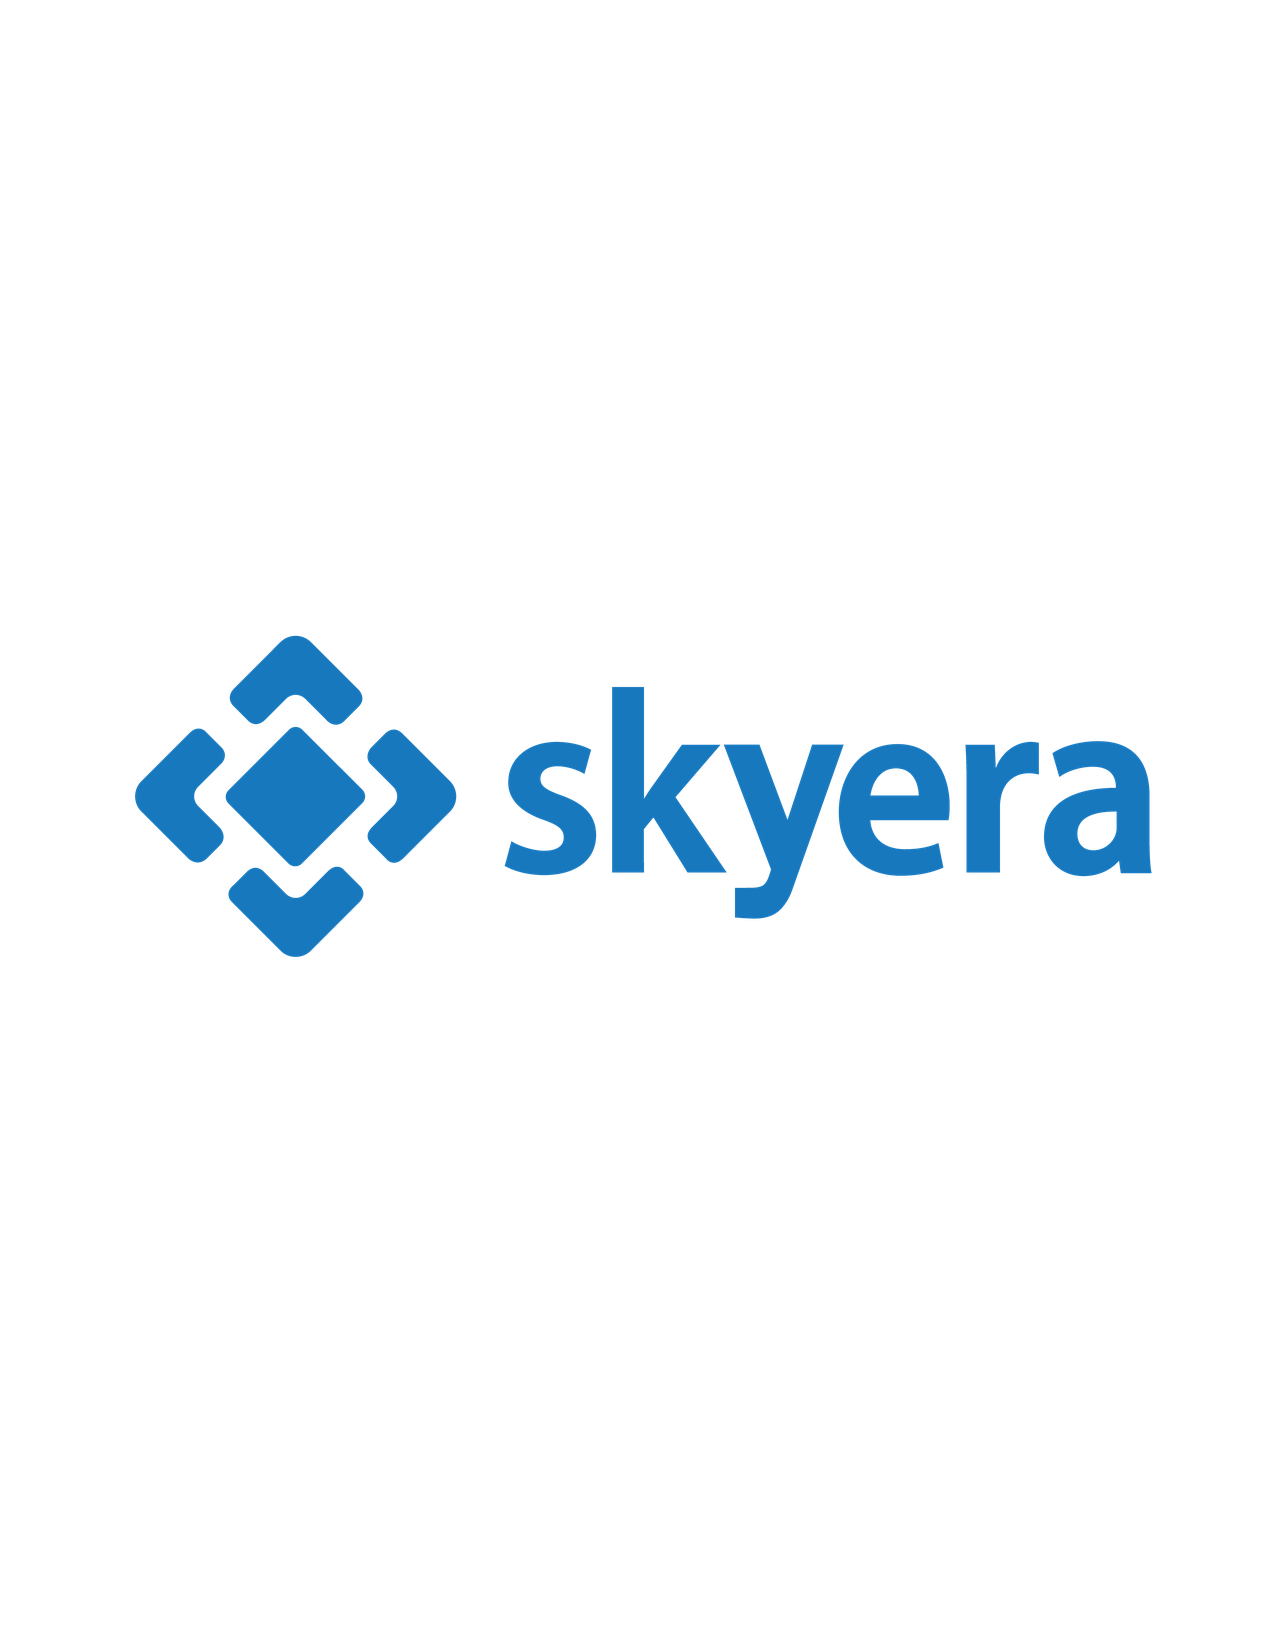 Skyera LLC